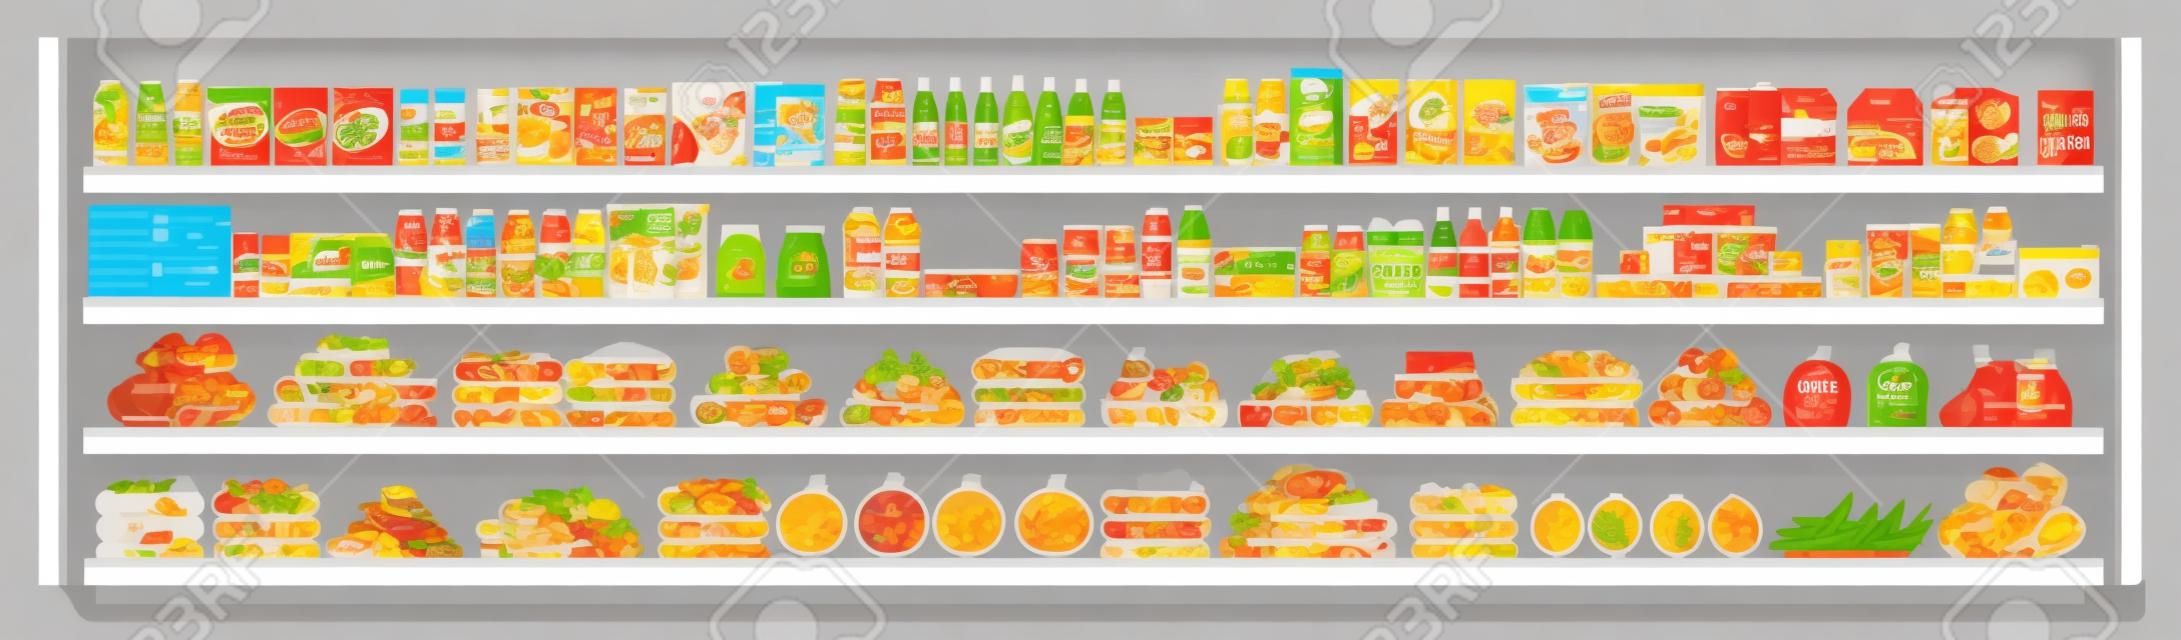 Lebensmittelartikel in den Supermarktregalen und Angeboten voll mit einer Auswahl an Speisen und Getränken, flache Vektorgrafik, nahtlose Hintergrundillustration. Einkaufs- und Einzelhandelskonzept.